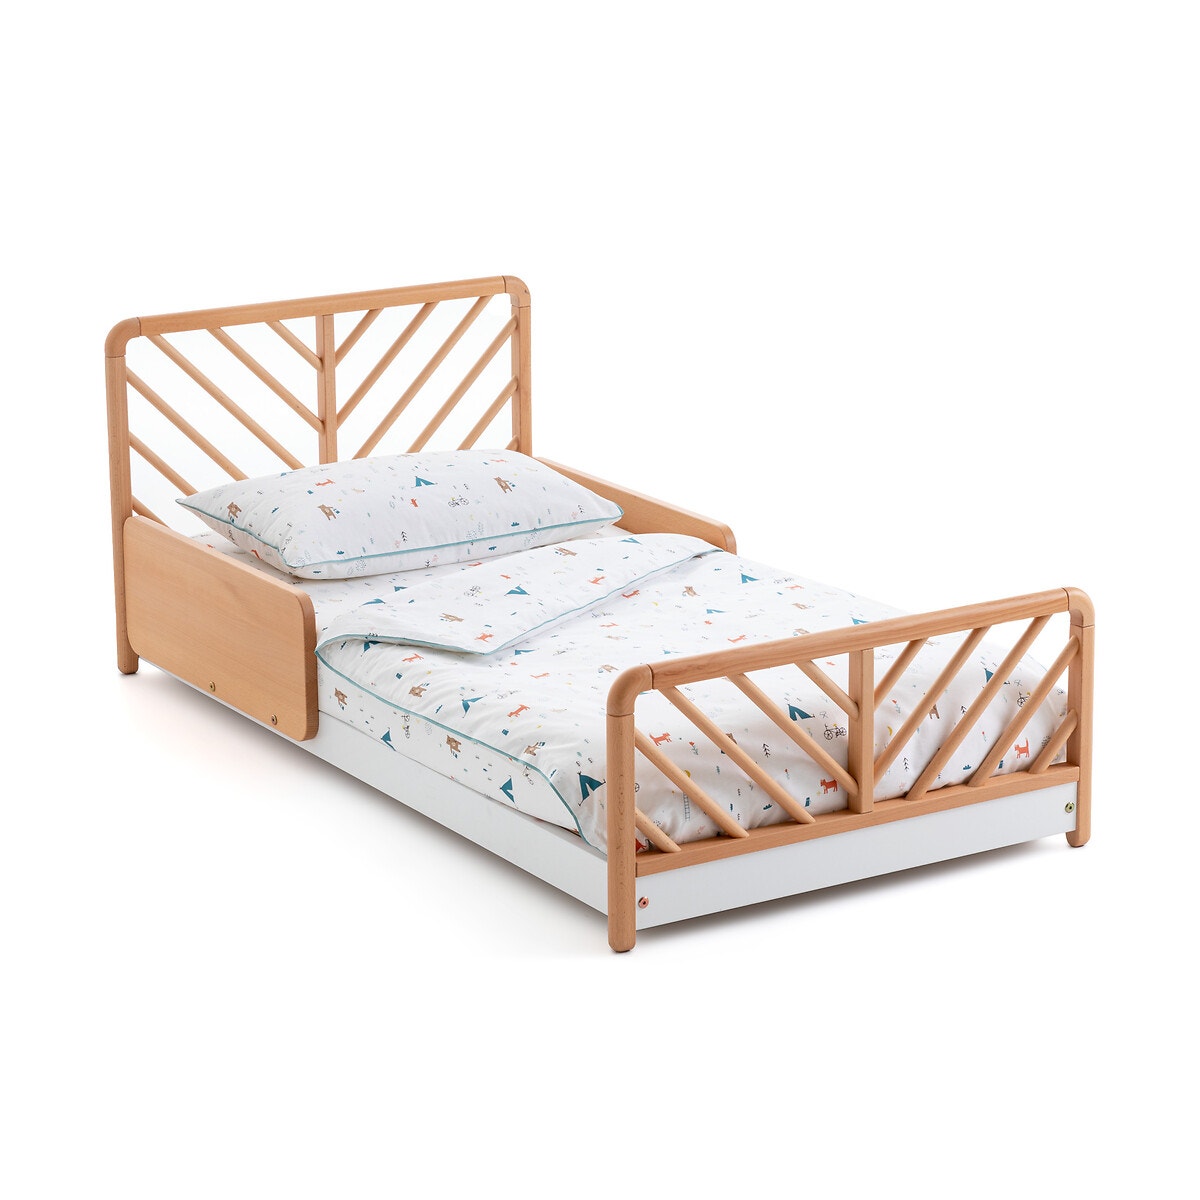 Σπίτι > Έπιπλα > Παιδικό Υπνοδωμάτιο > Παιδικά κρεβάτια > Απλά κρεβάτια Κρεβάτι με τάβλες Μ76xΠ146cm